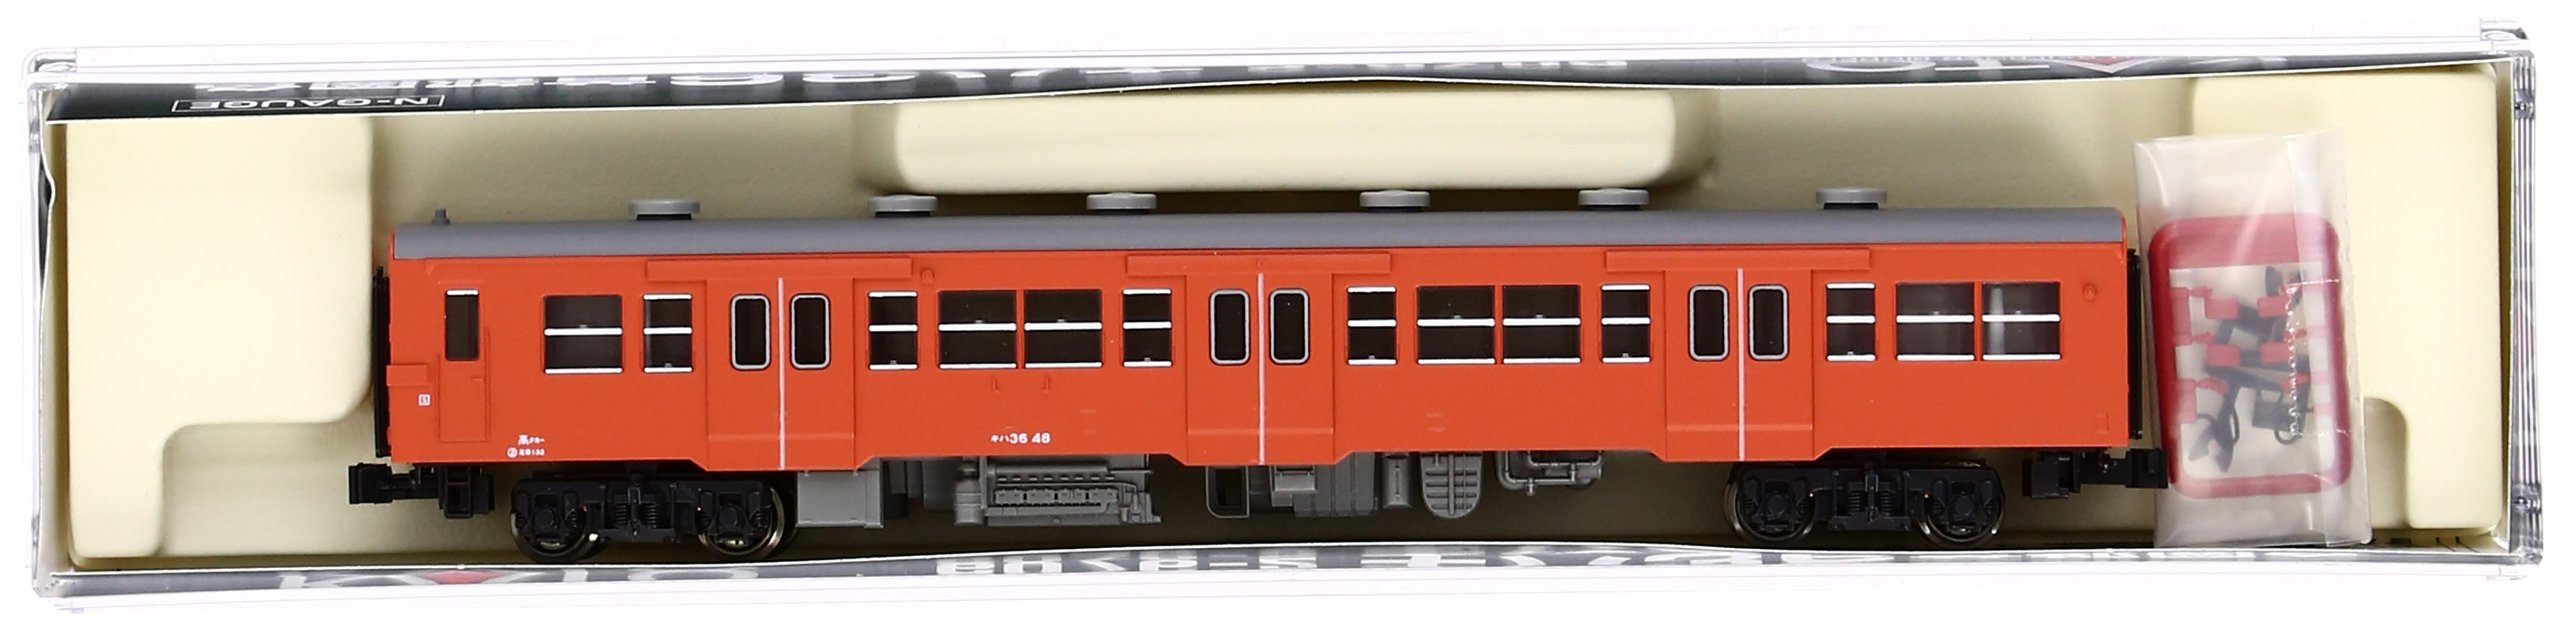 Kato Kiha36 N Gauge Diesel Railway Model Car - Metropolitan Area Color 6076-2